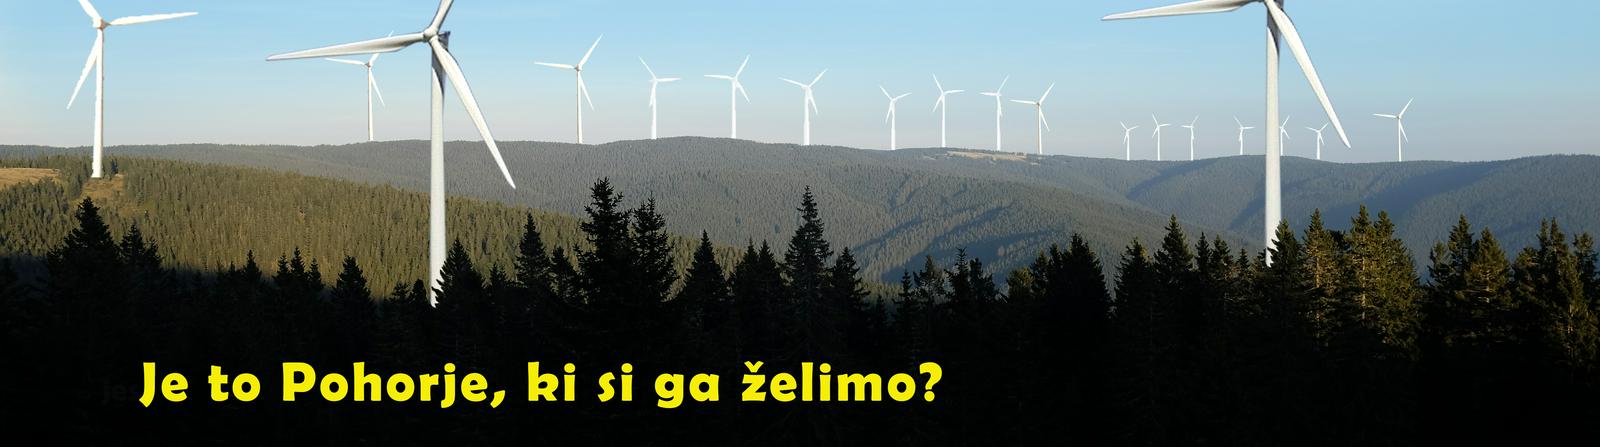 Fotomontaža civilne iniciative, ki prikazuje, kakšna bi bila panorama Pohorja s postavljenimi vetrnicami. Foto: Za Pohorje brez vetrnih elektrarn